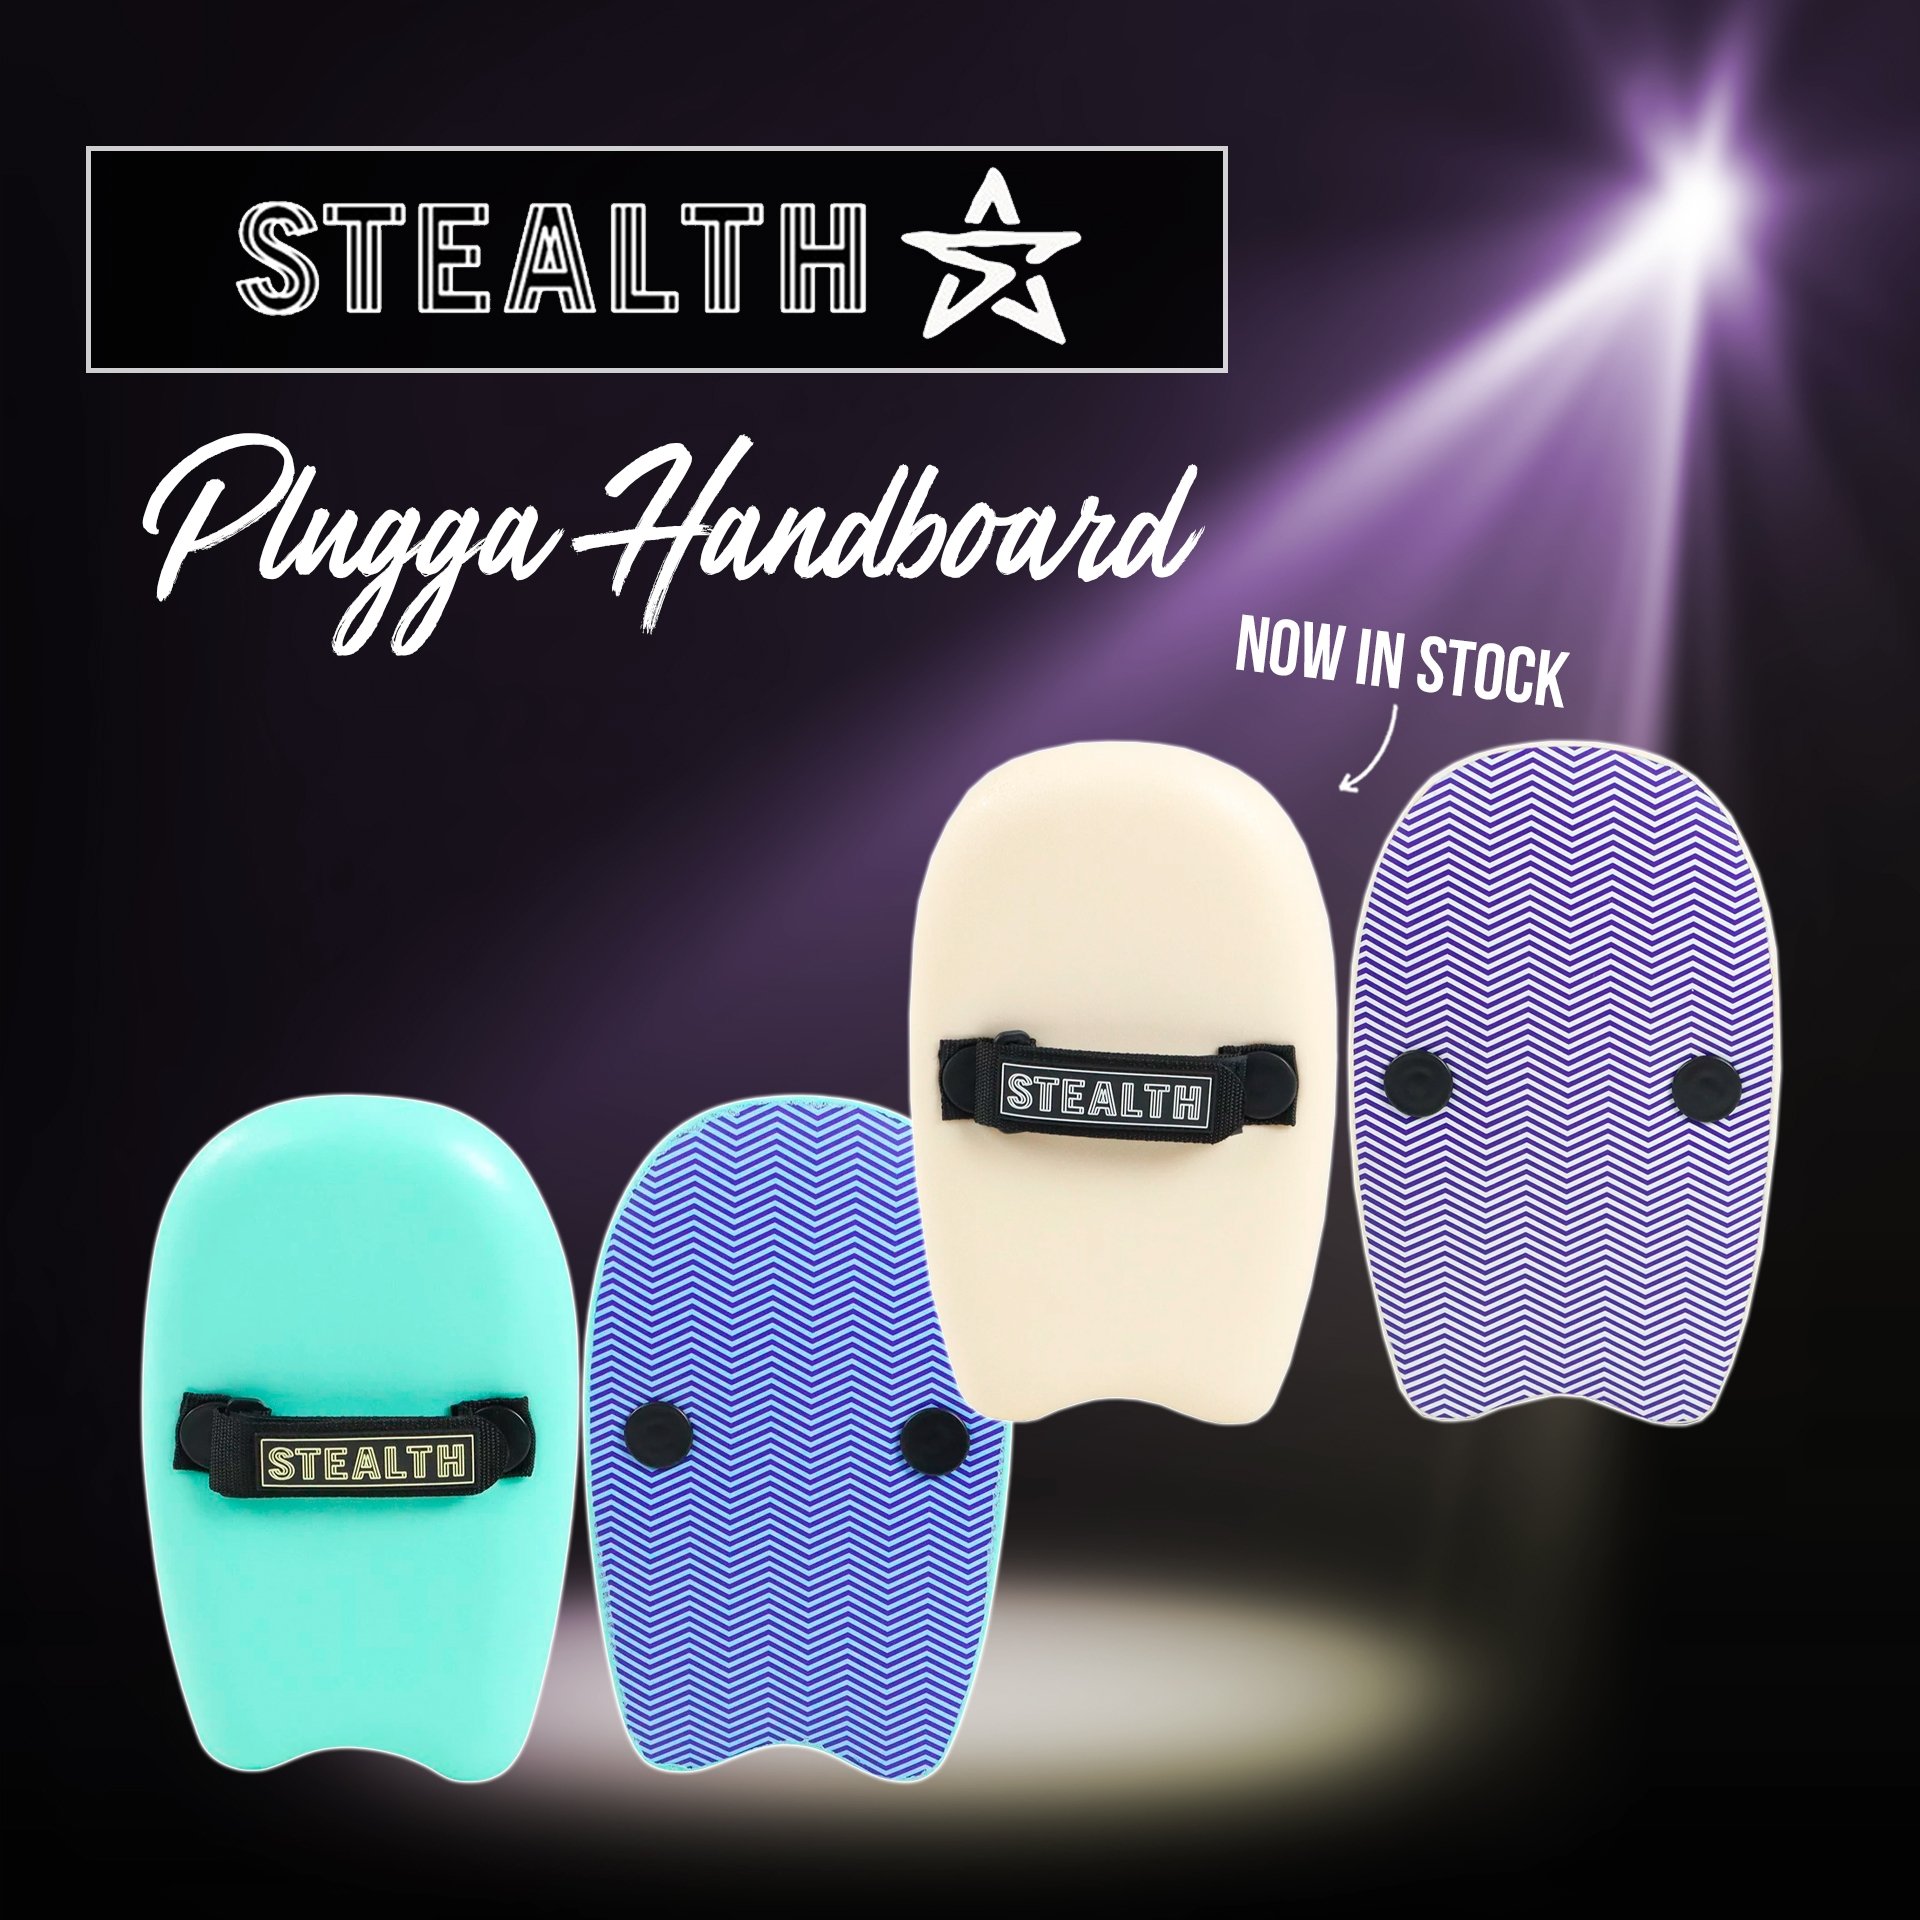 New - Stealth Plugga Handboard